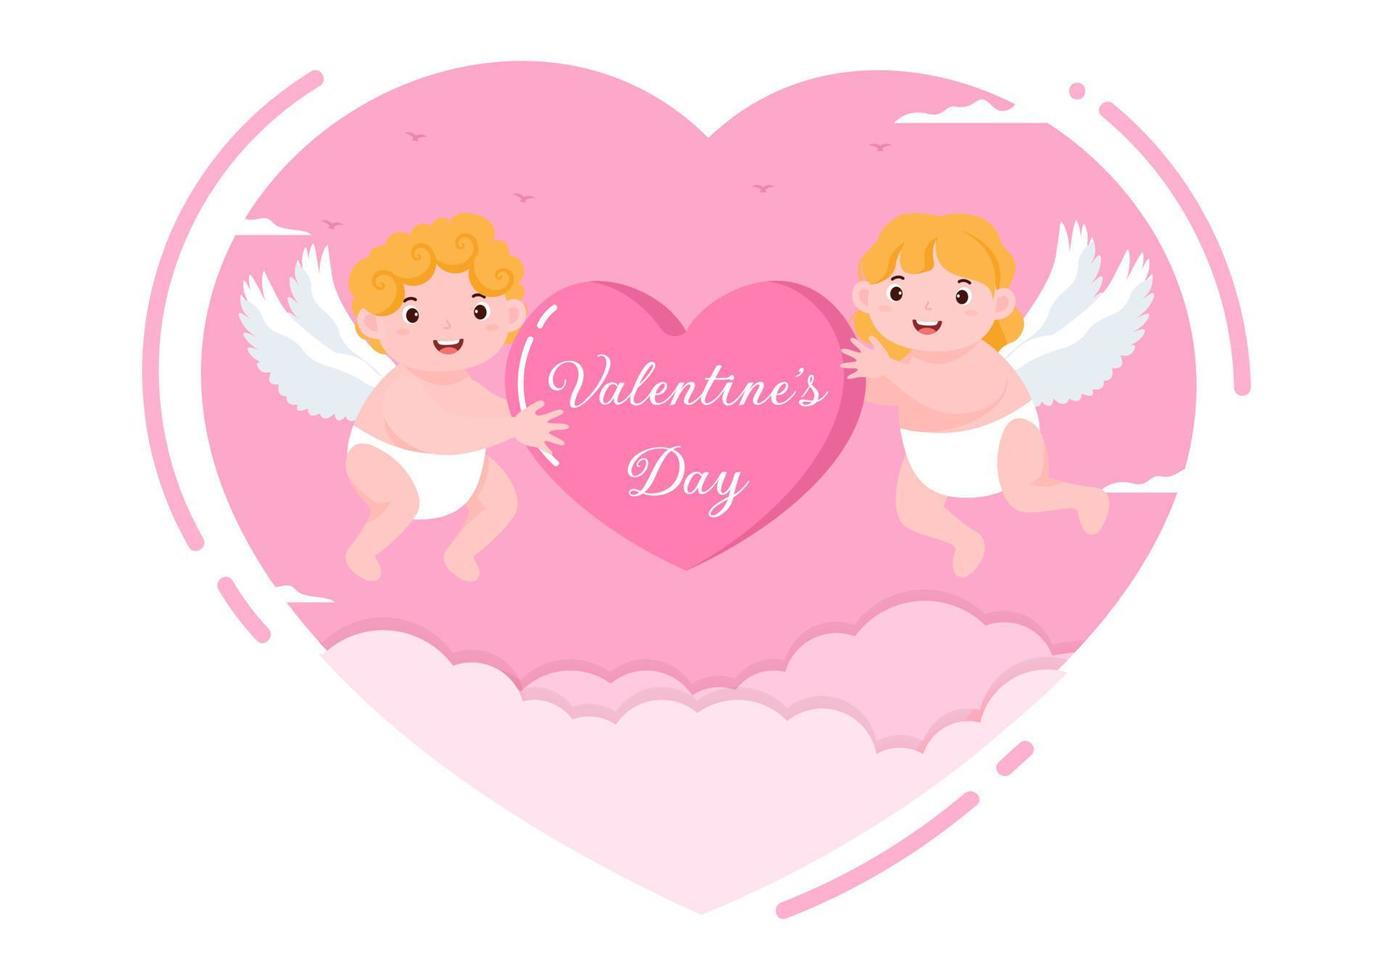 gelukkige Valentijnsdag platte ontwerp illustratie die wordt herdacht op 17 februari met schattige cupido, engelen op wolken voor liefde wenskaart vector